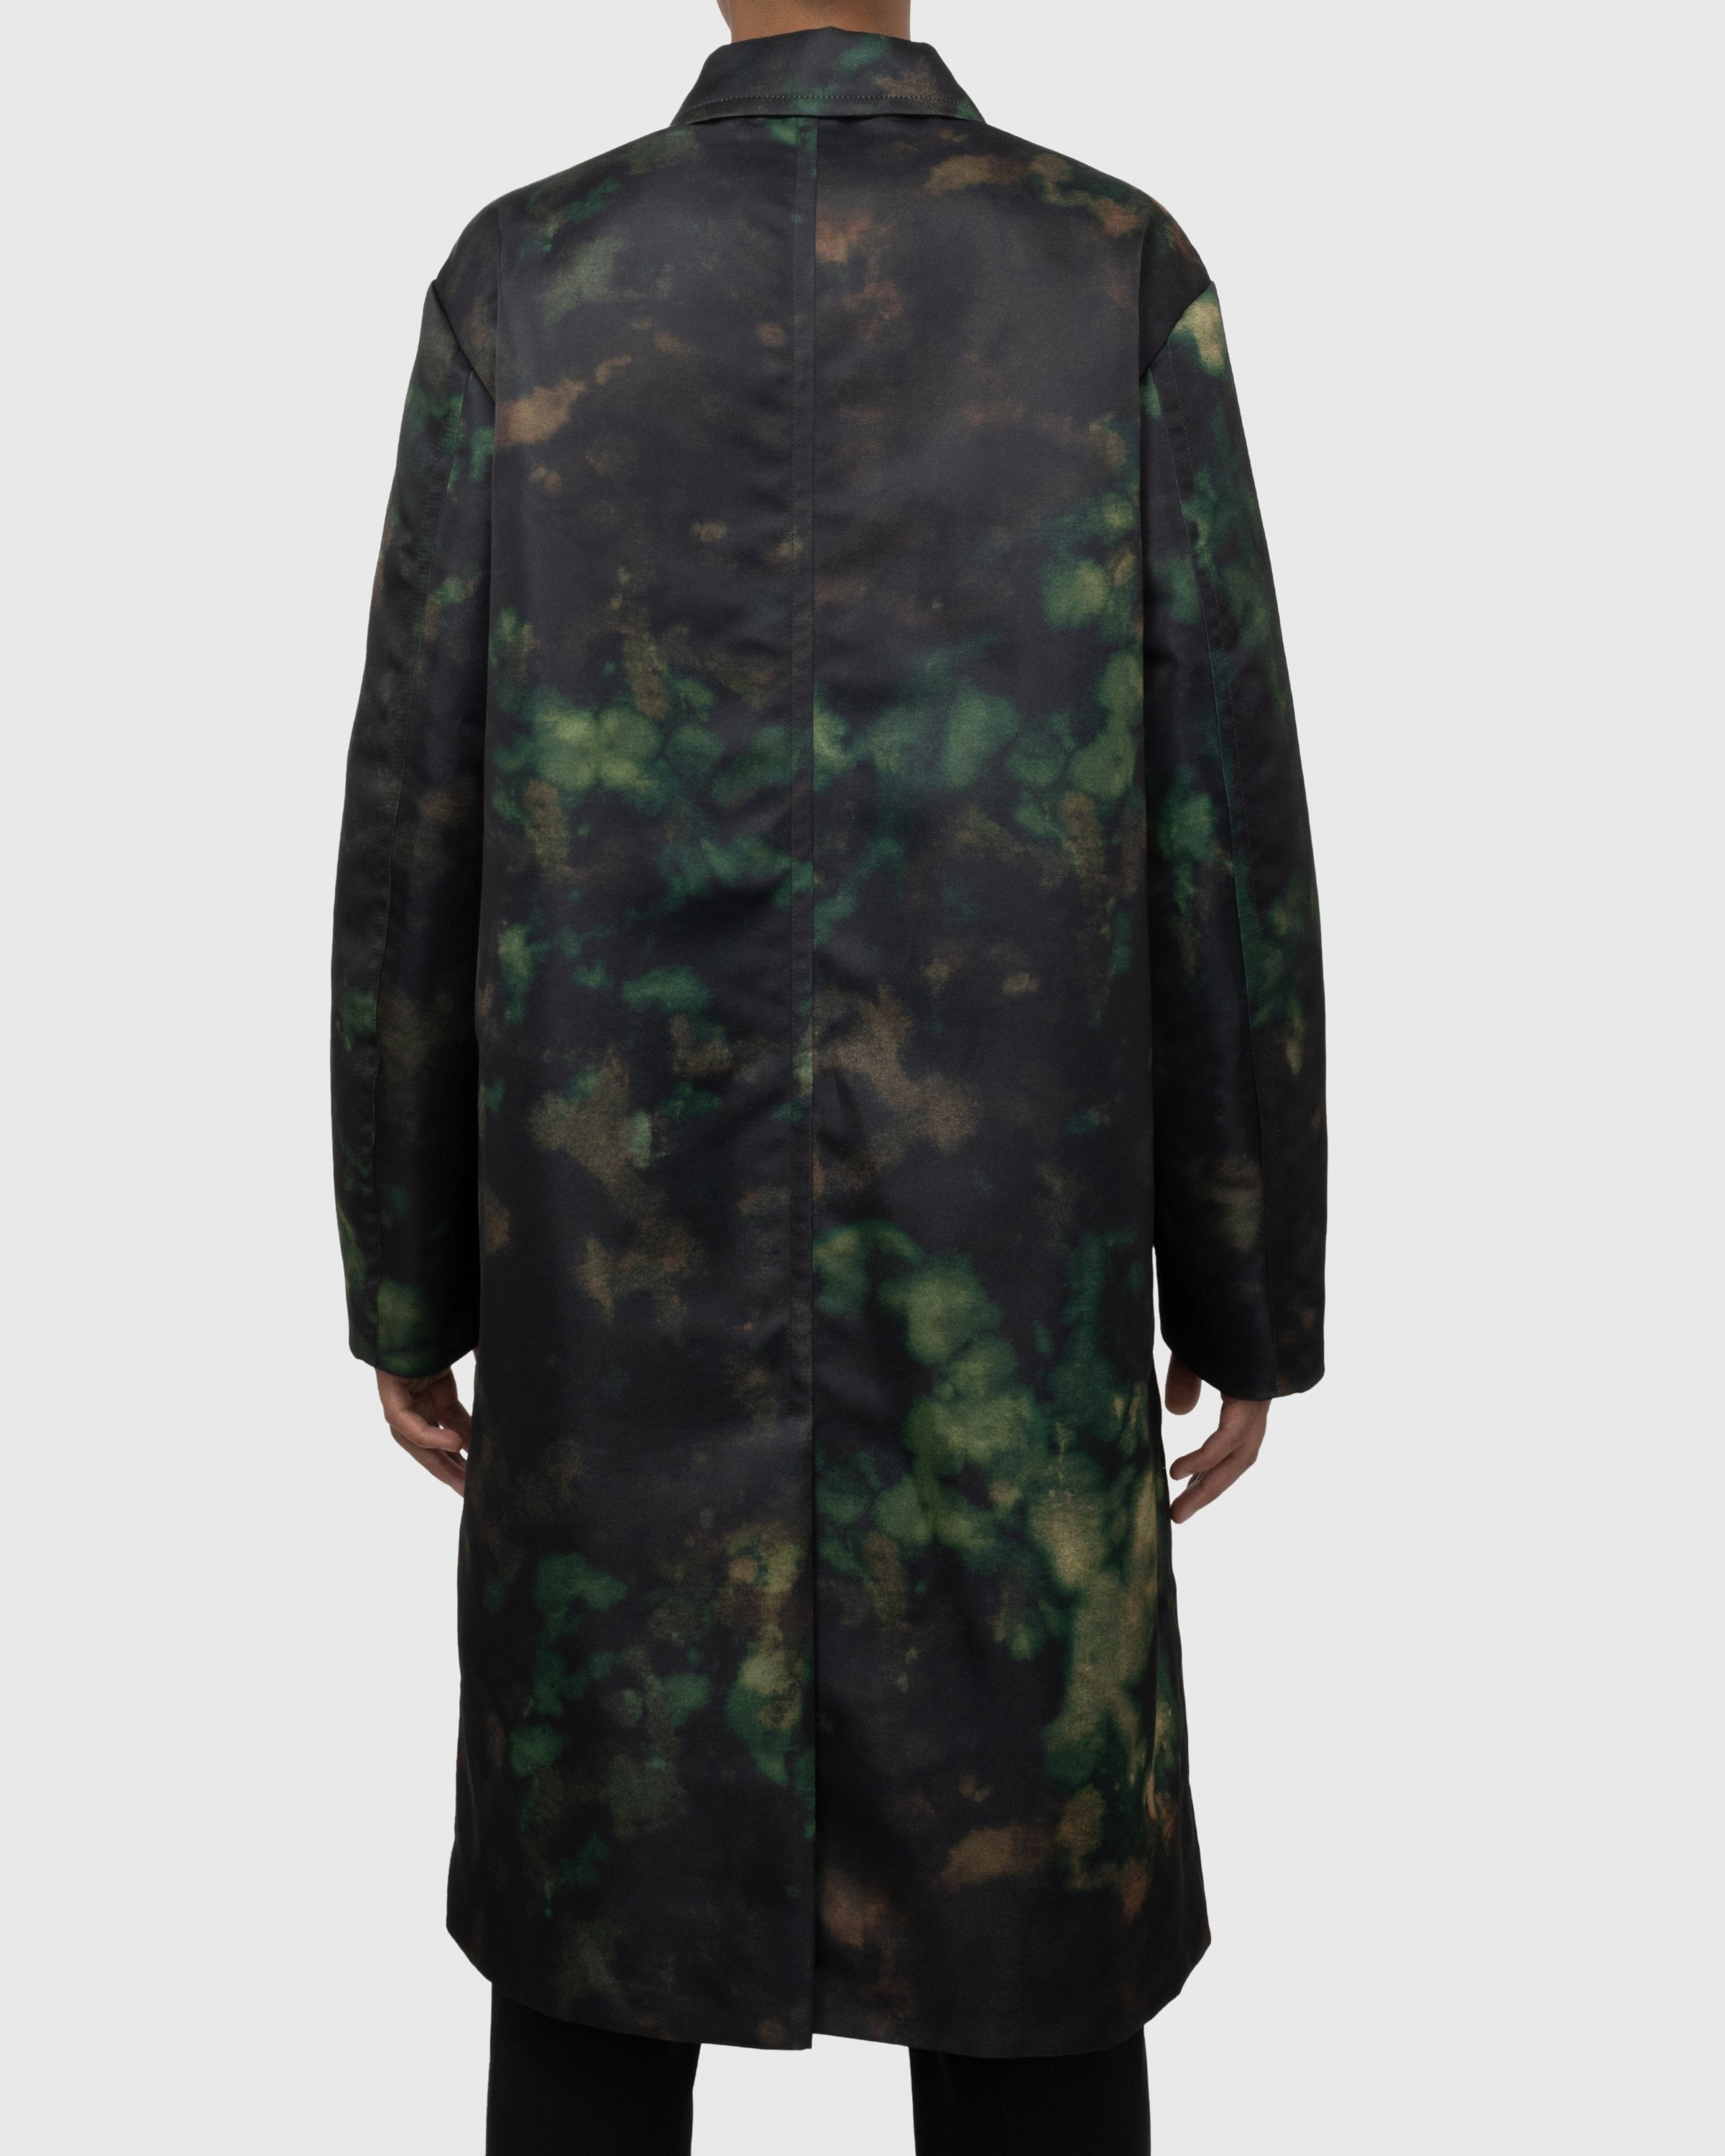 Dries van Noten – Redmore Coat Green - Outerwear - Green - Image 4